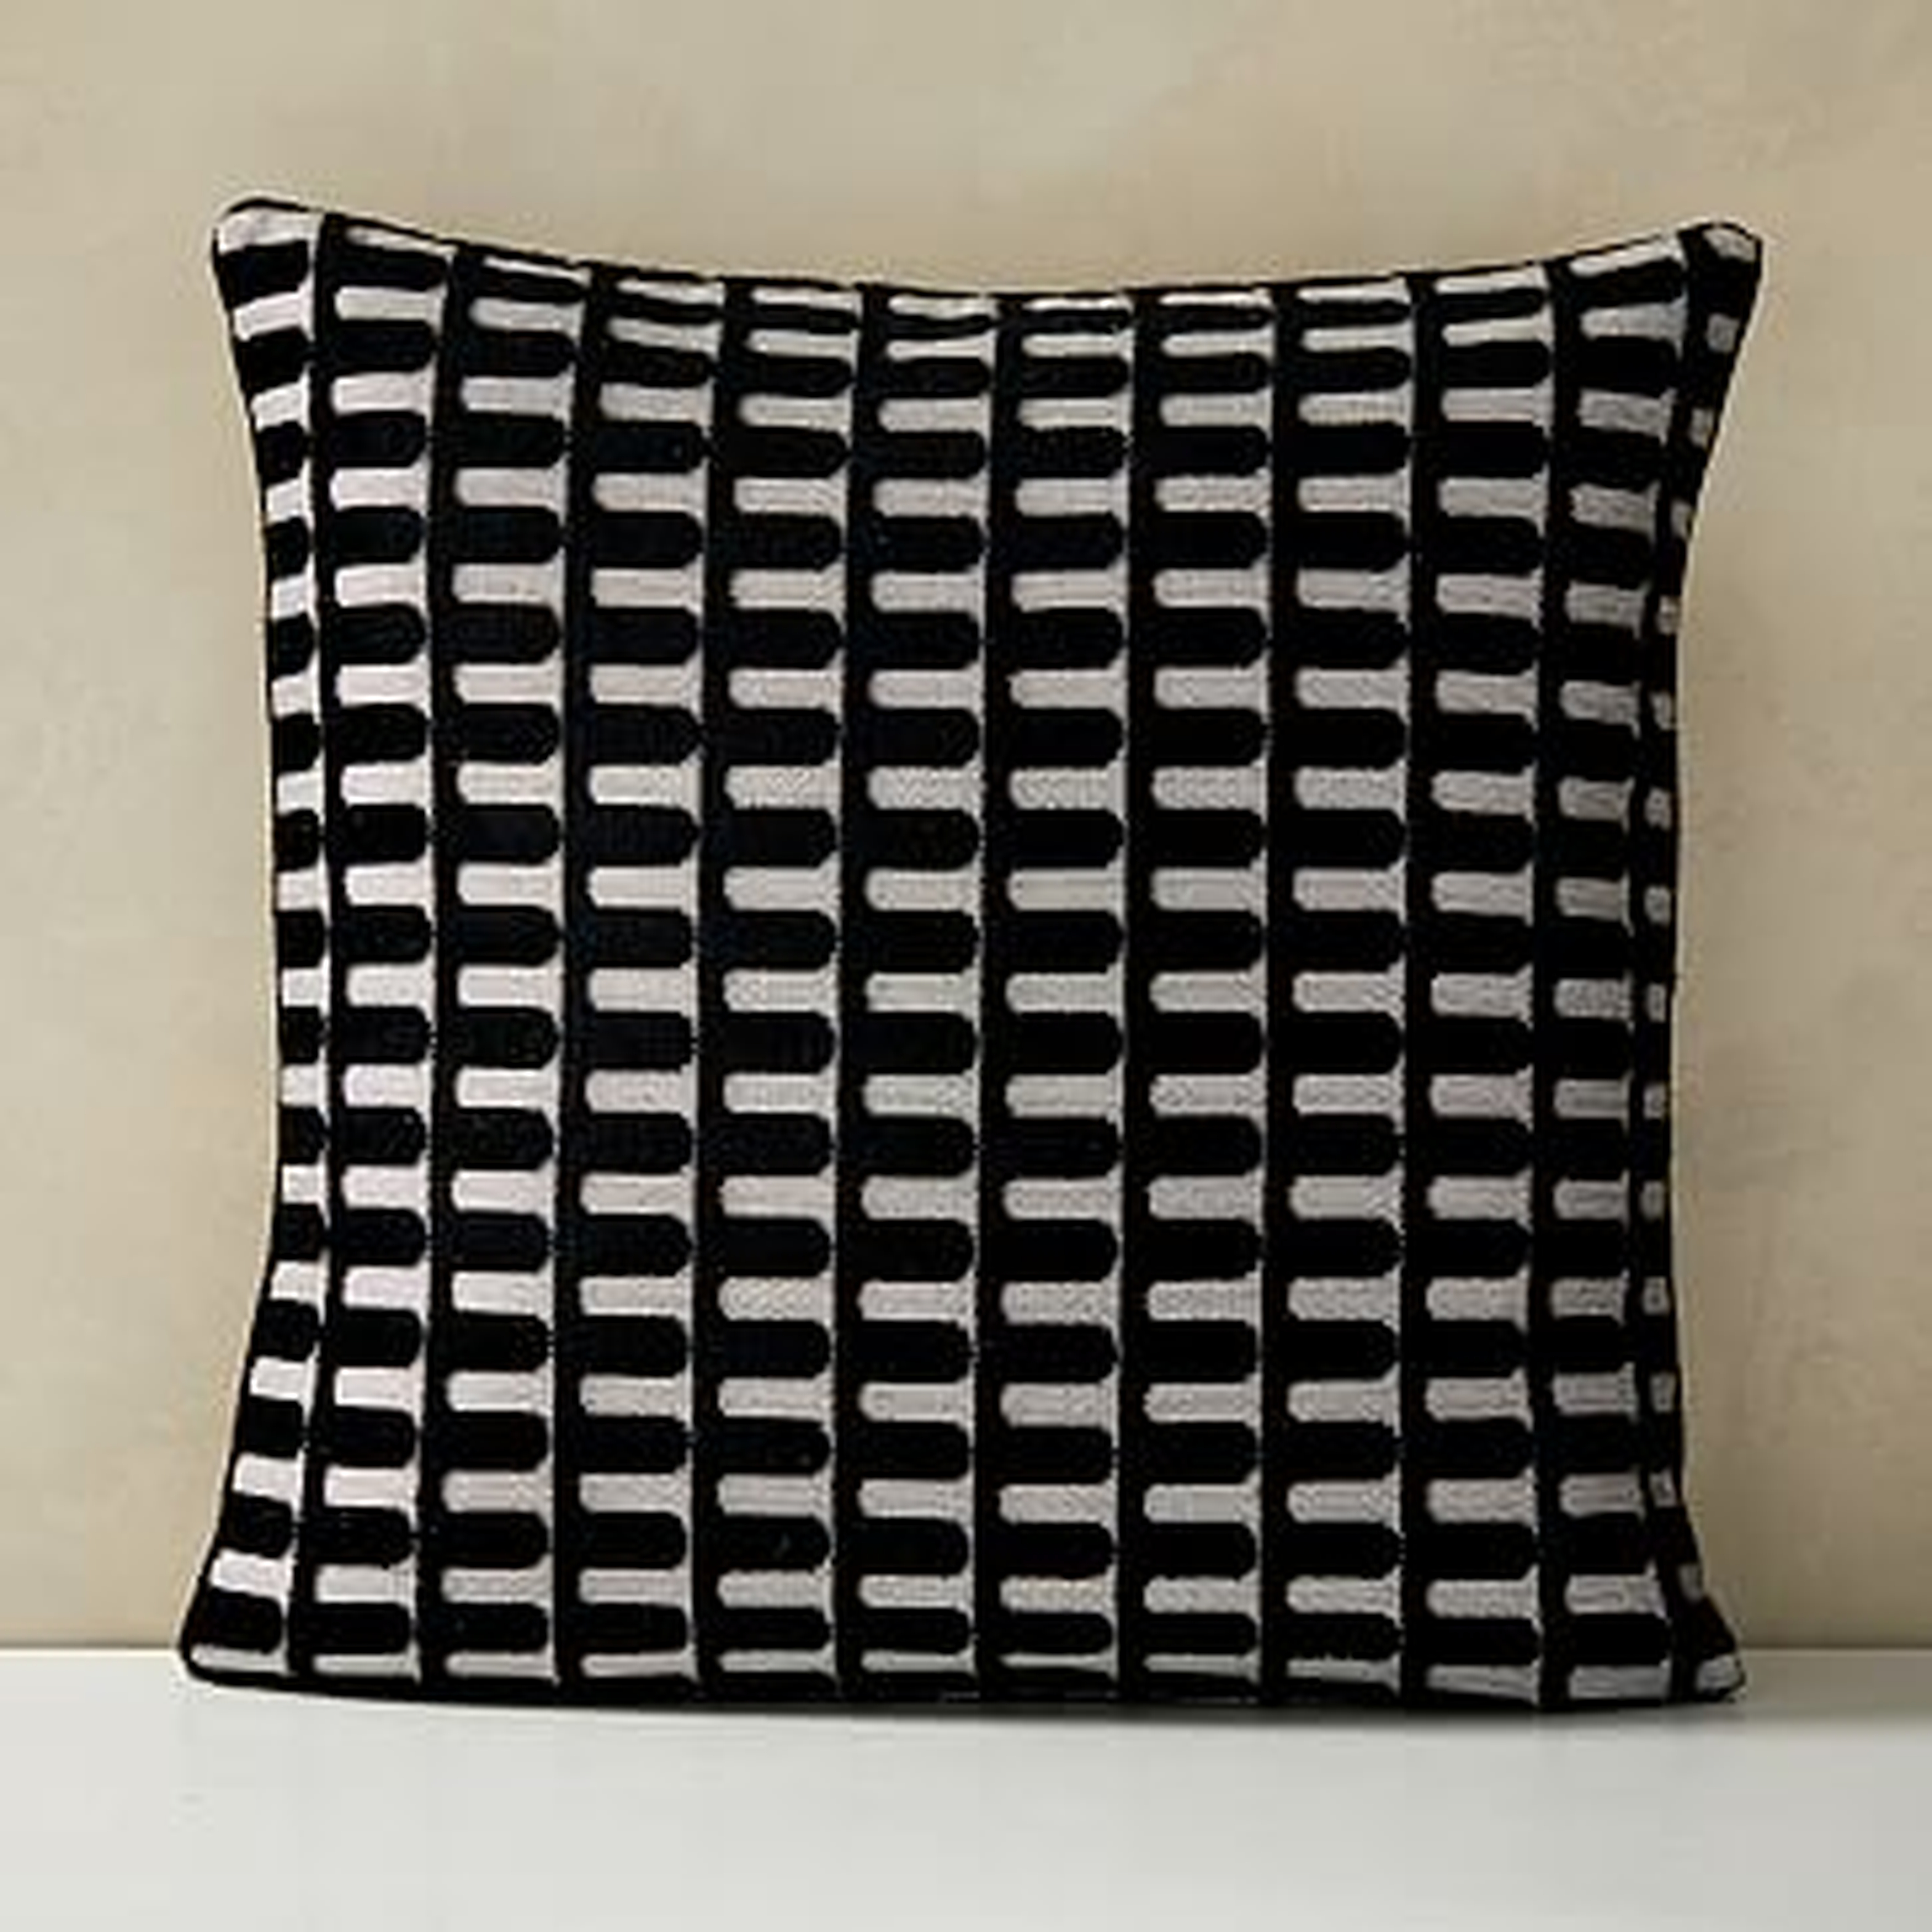 Cut Velvet Archways Pillow Cover, 20"x20", Black - West Elm